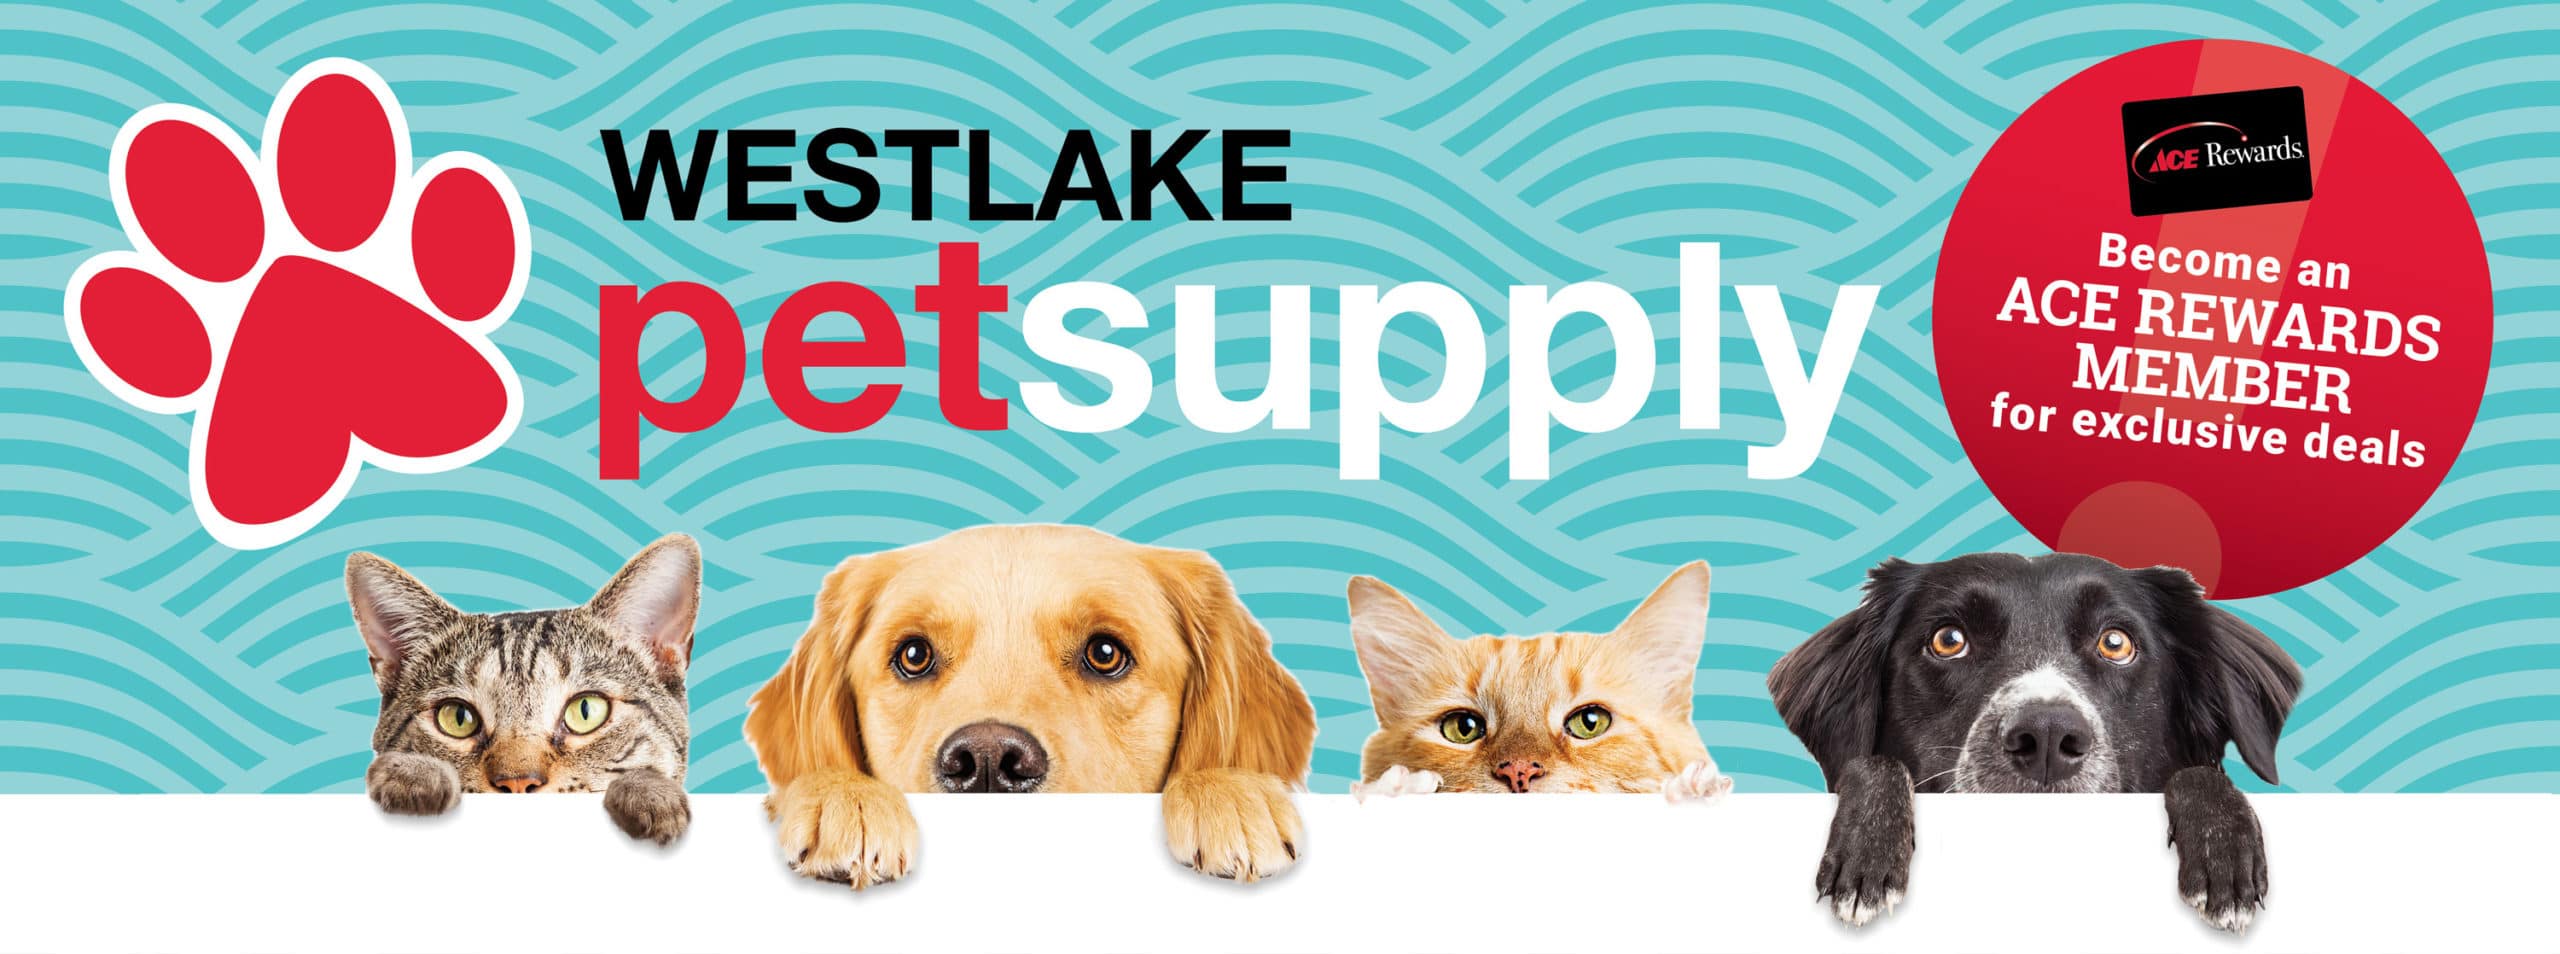 westlake pet supply